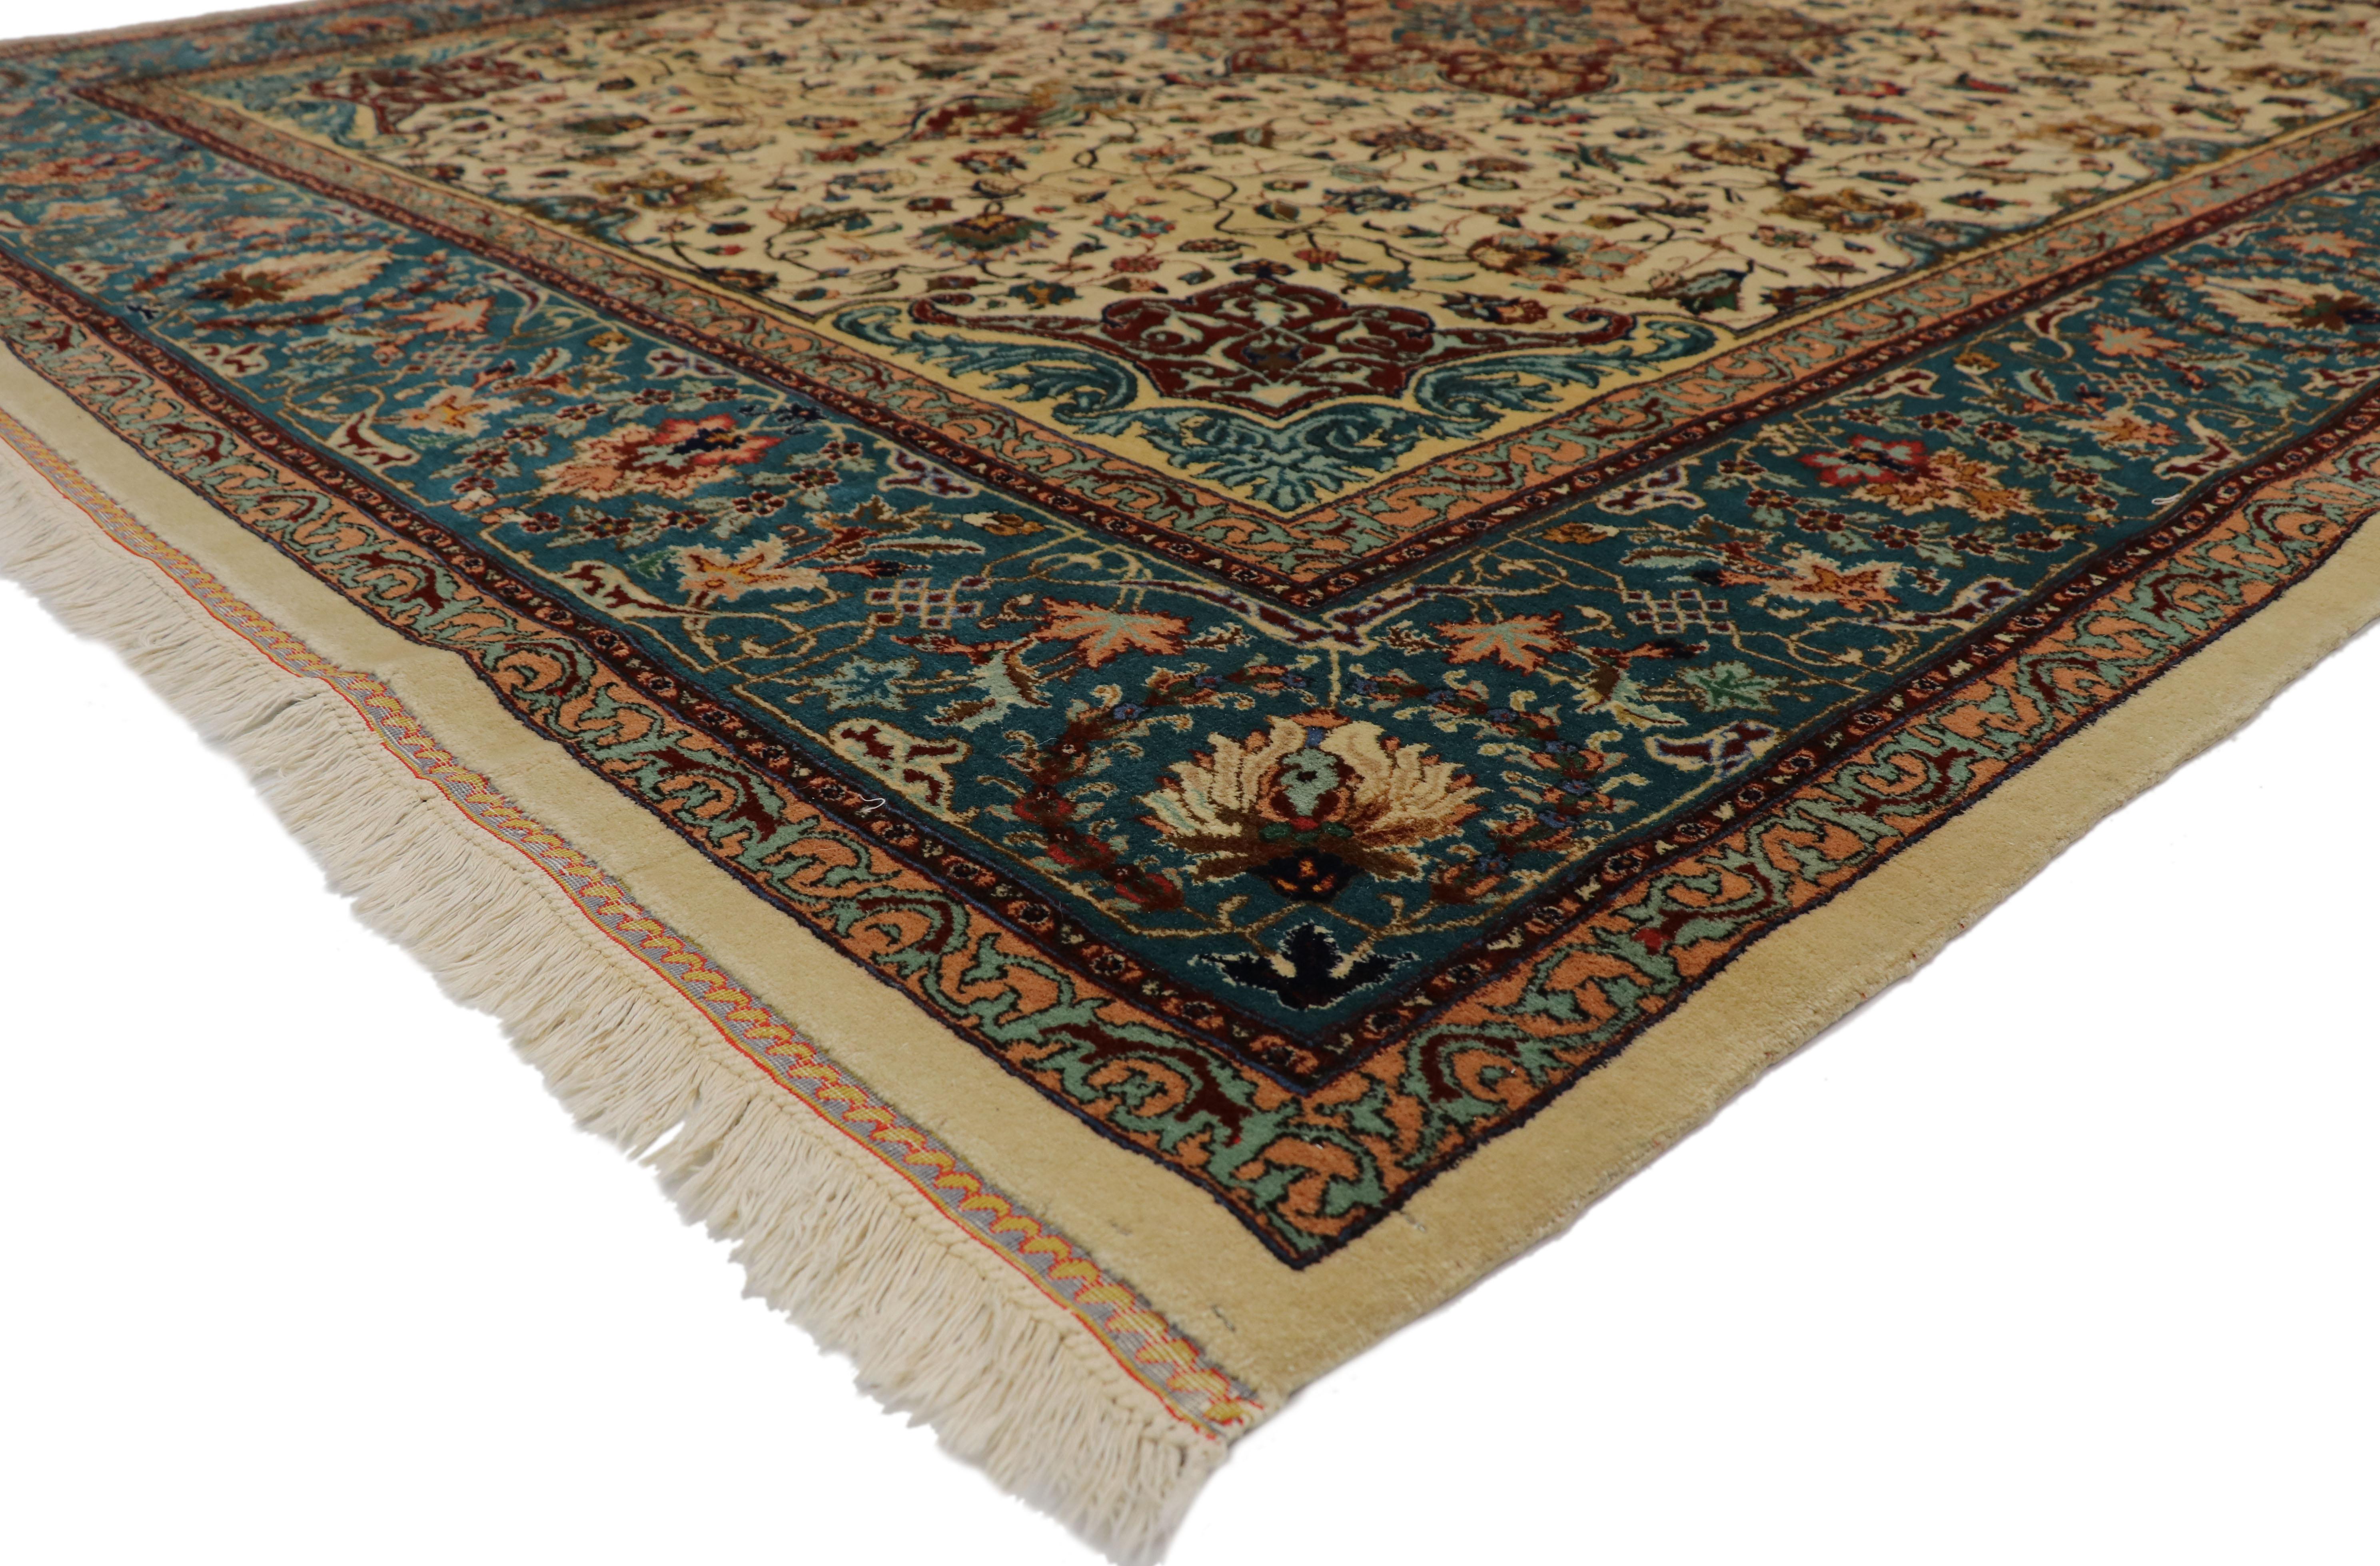 77352, Vintage Persian Tabriz Rug avec Baroque Venetian Style 09'00 x 11'03. Avec ses couleurs riches et son glamour exotique, ce tapis Tabriz persan vintage en laine noué à la main incarne véritablement le style vénitien avec un soupçon de baroque.